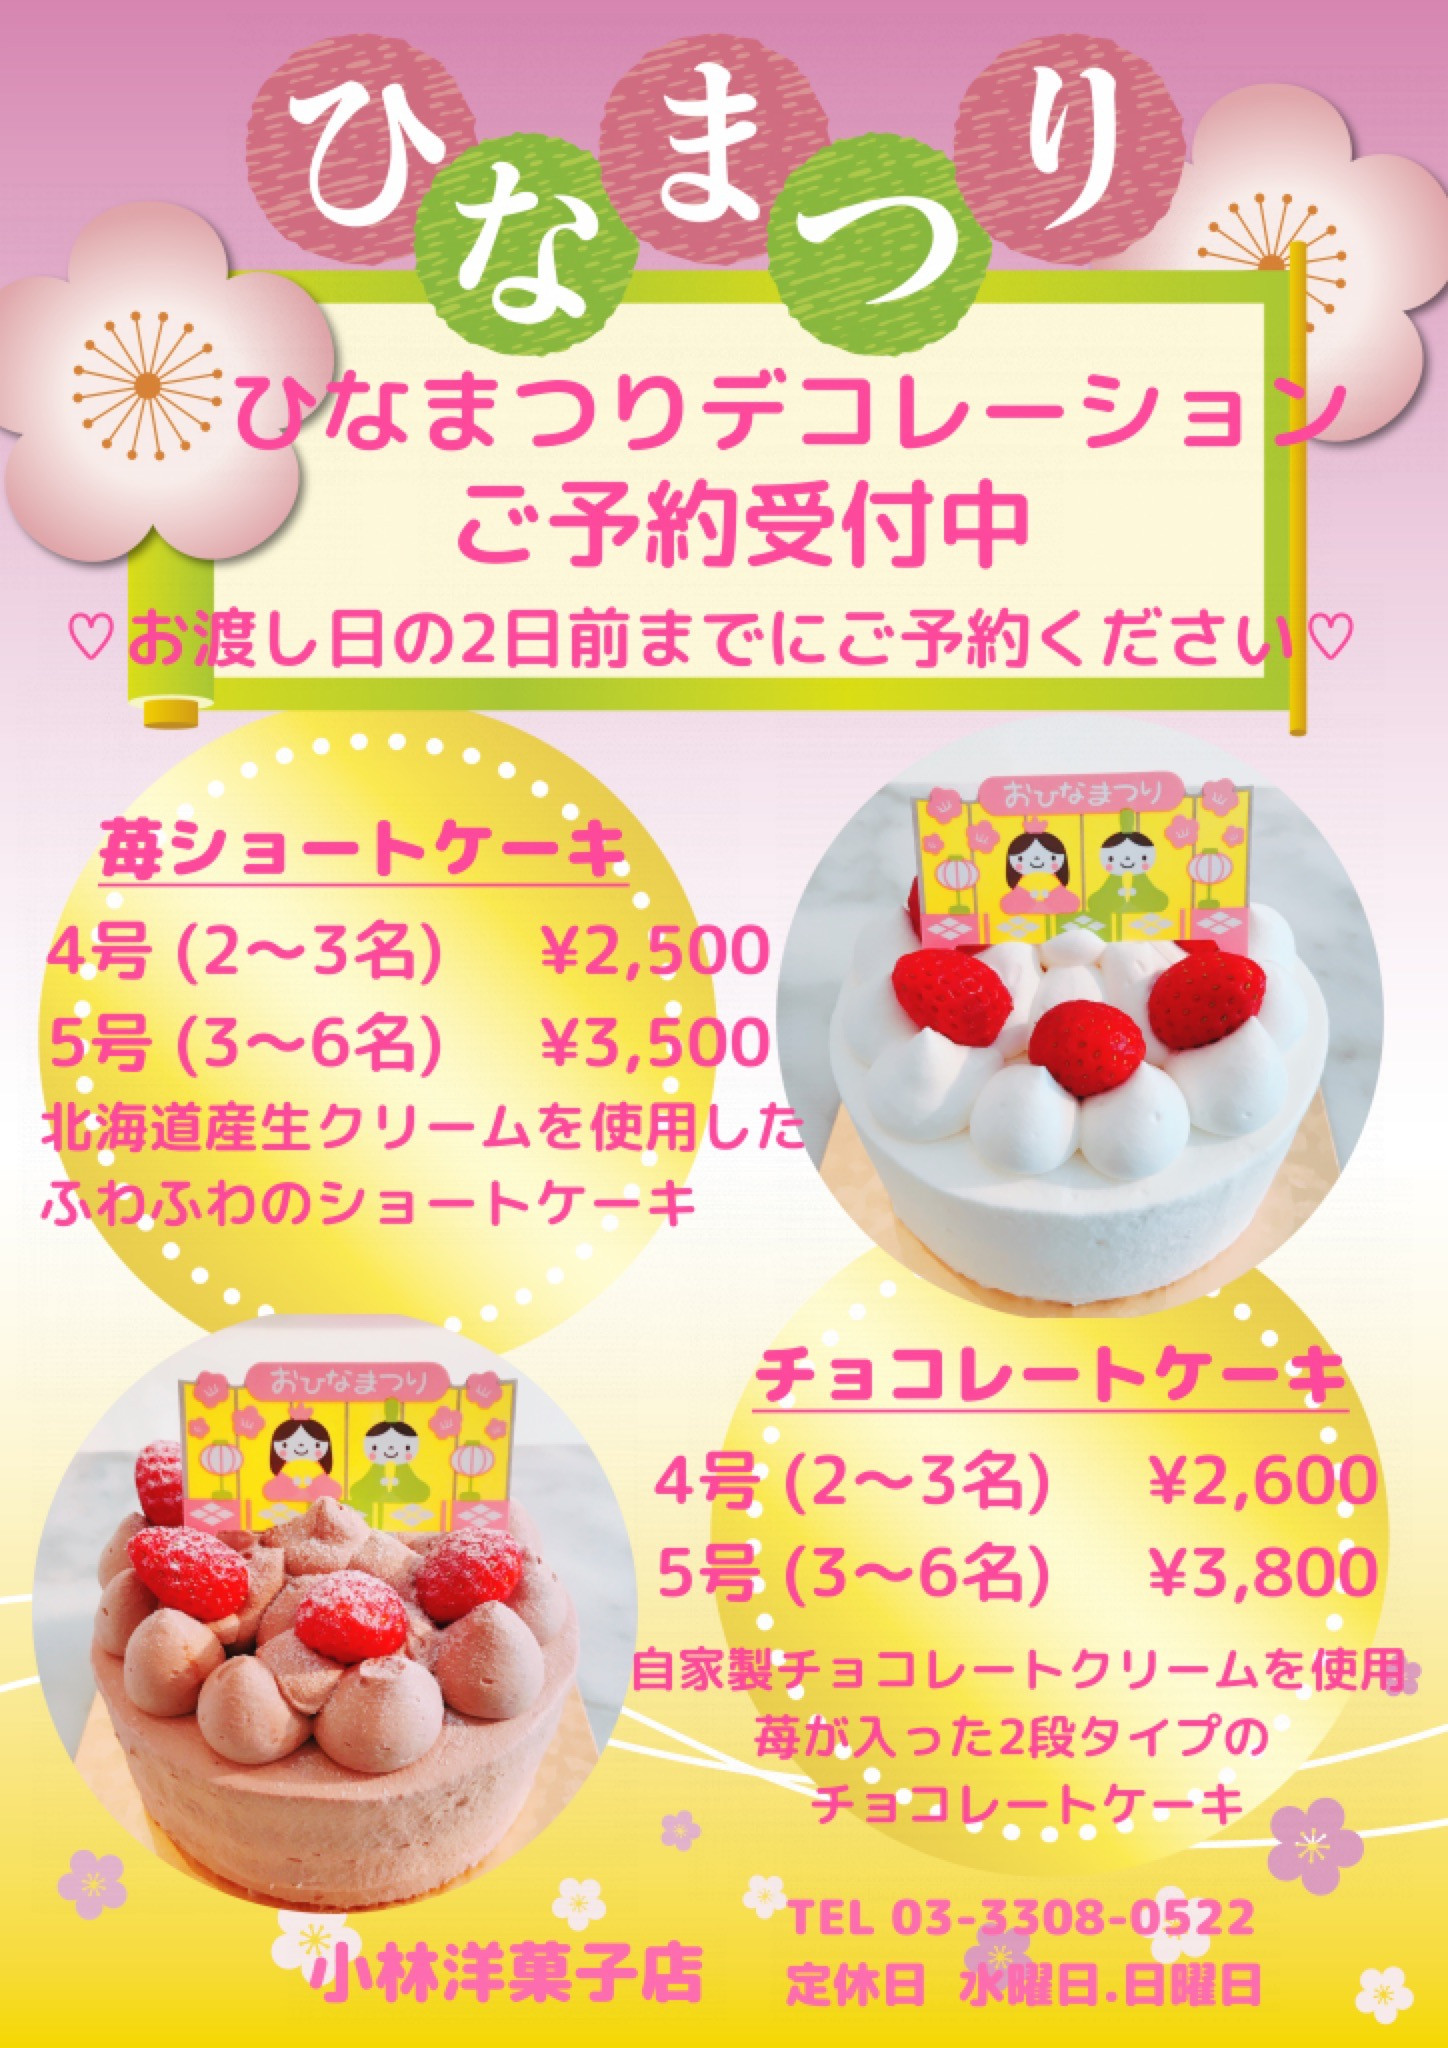 ひなまつりケーキ予約受付中 毎日の手作り洋菓子 小林洋菓子店